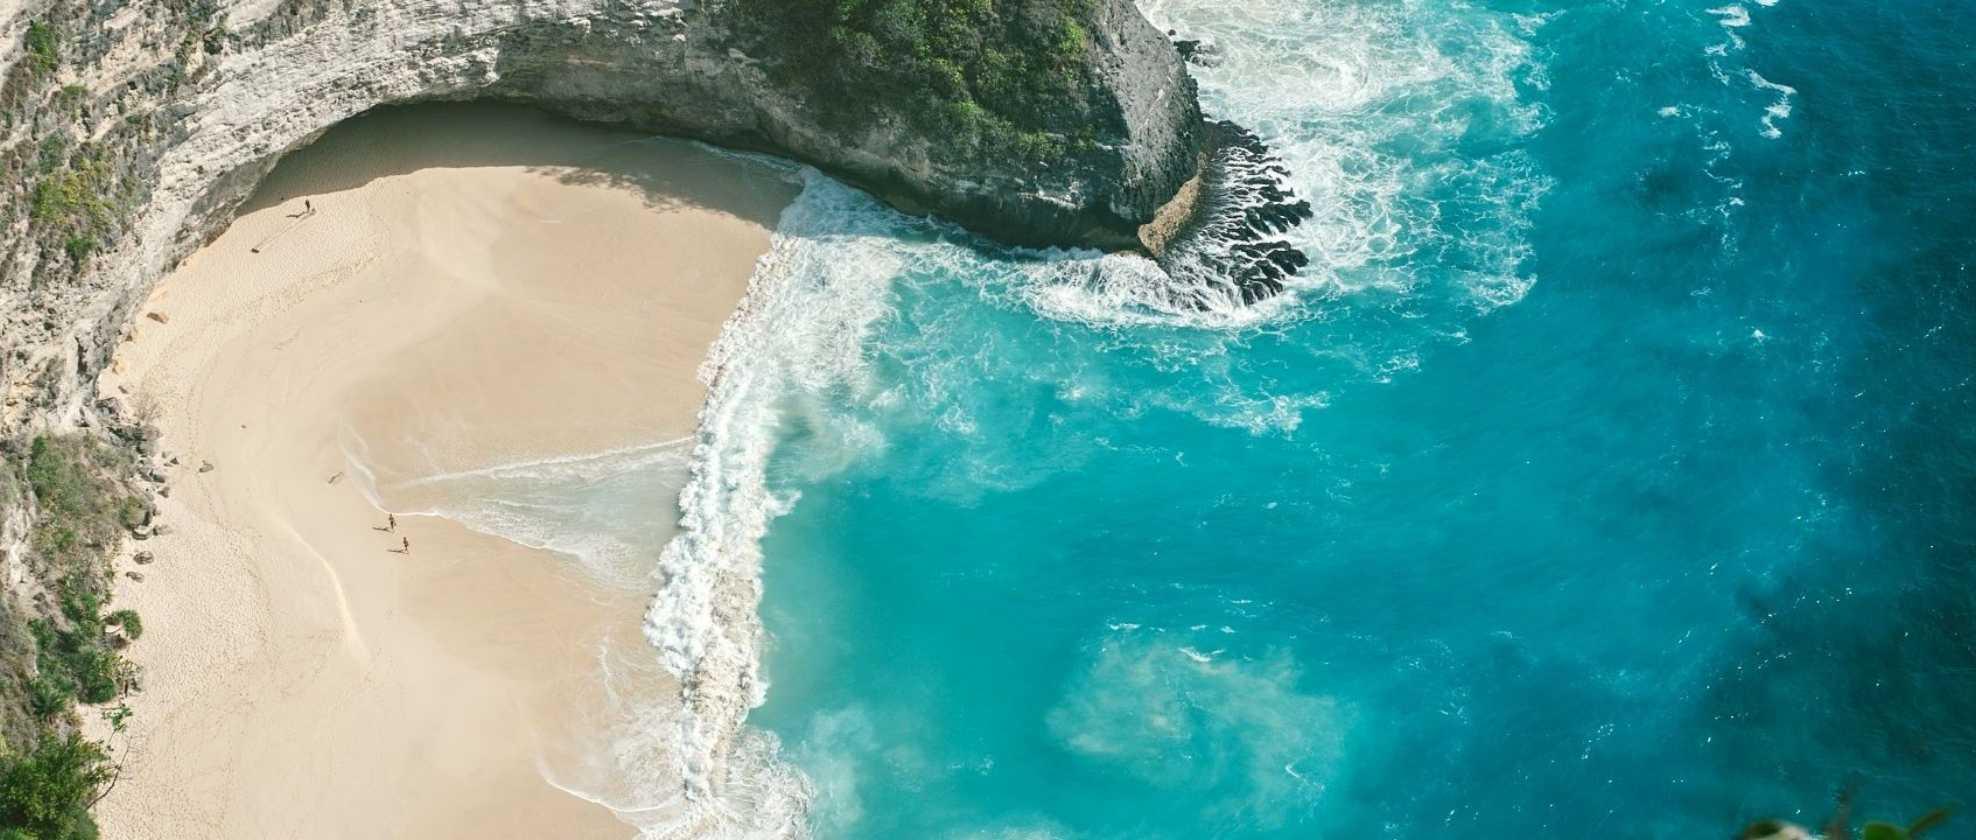 https://omnispace.blob.core.windows.net/image-article/article-329-09 Mengenal Diamond Beach, Pantai secantik permata dari Bali.jpg